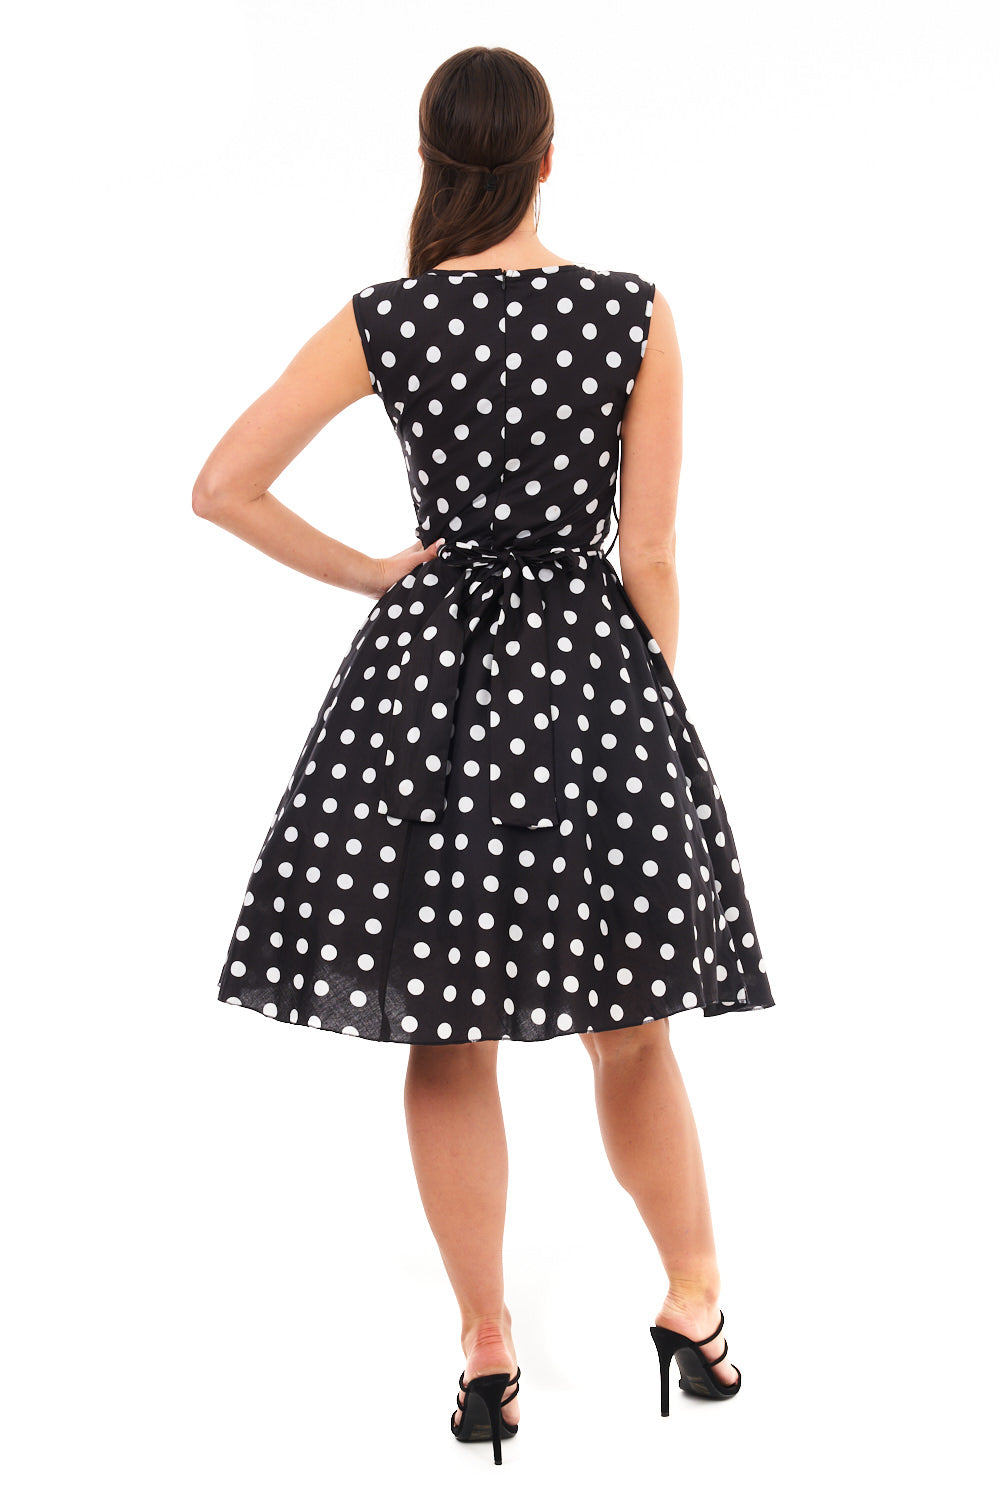 Ladies Retro Vintage 1940's / 1950s Inspired Polka Dot Dress in Black